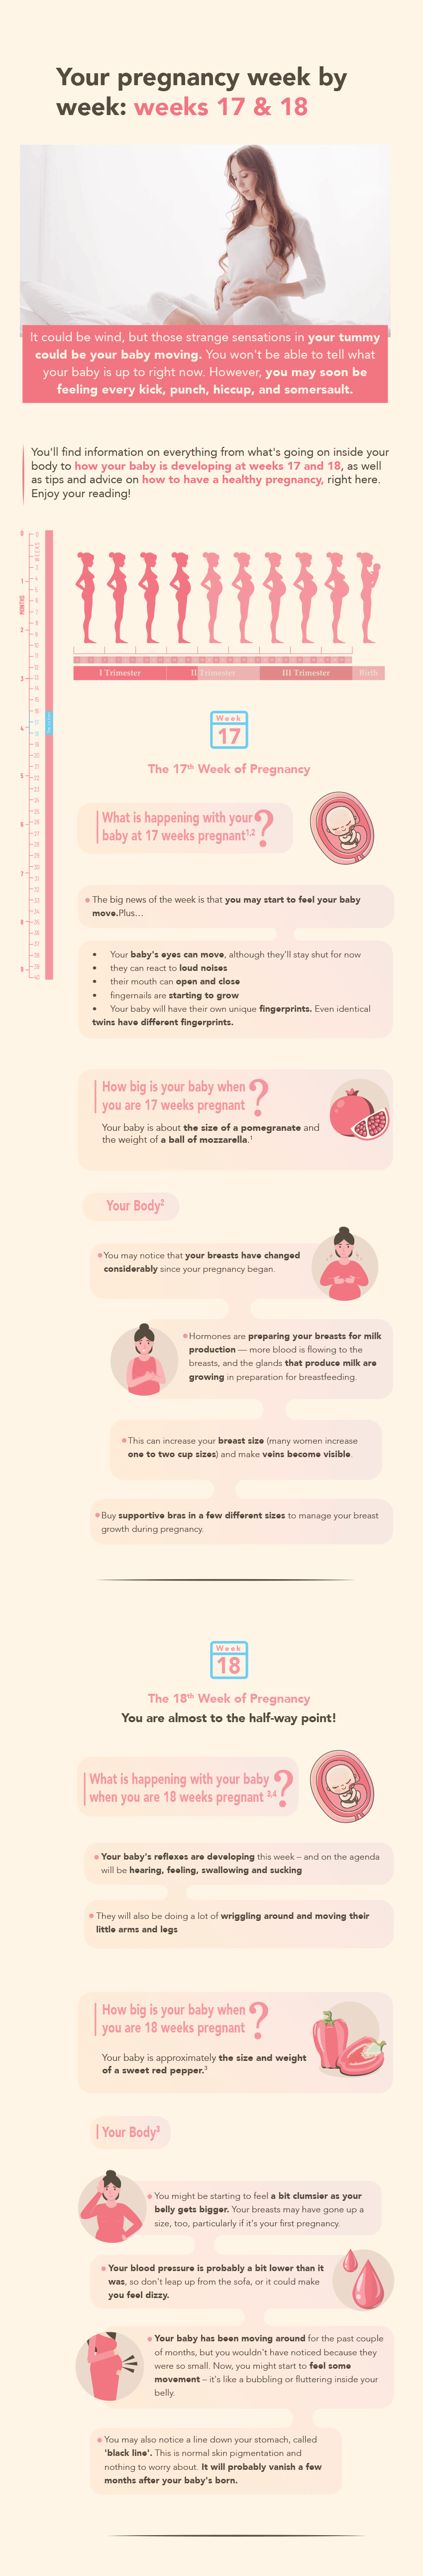 Pregnancy weeks 17&18